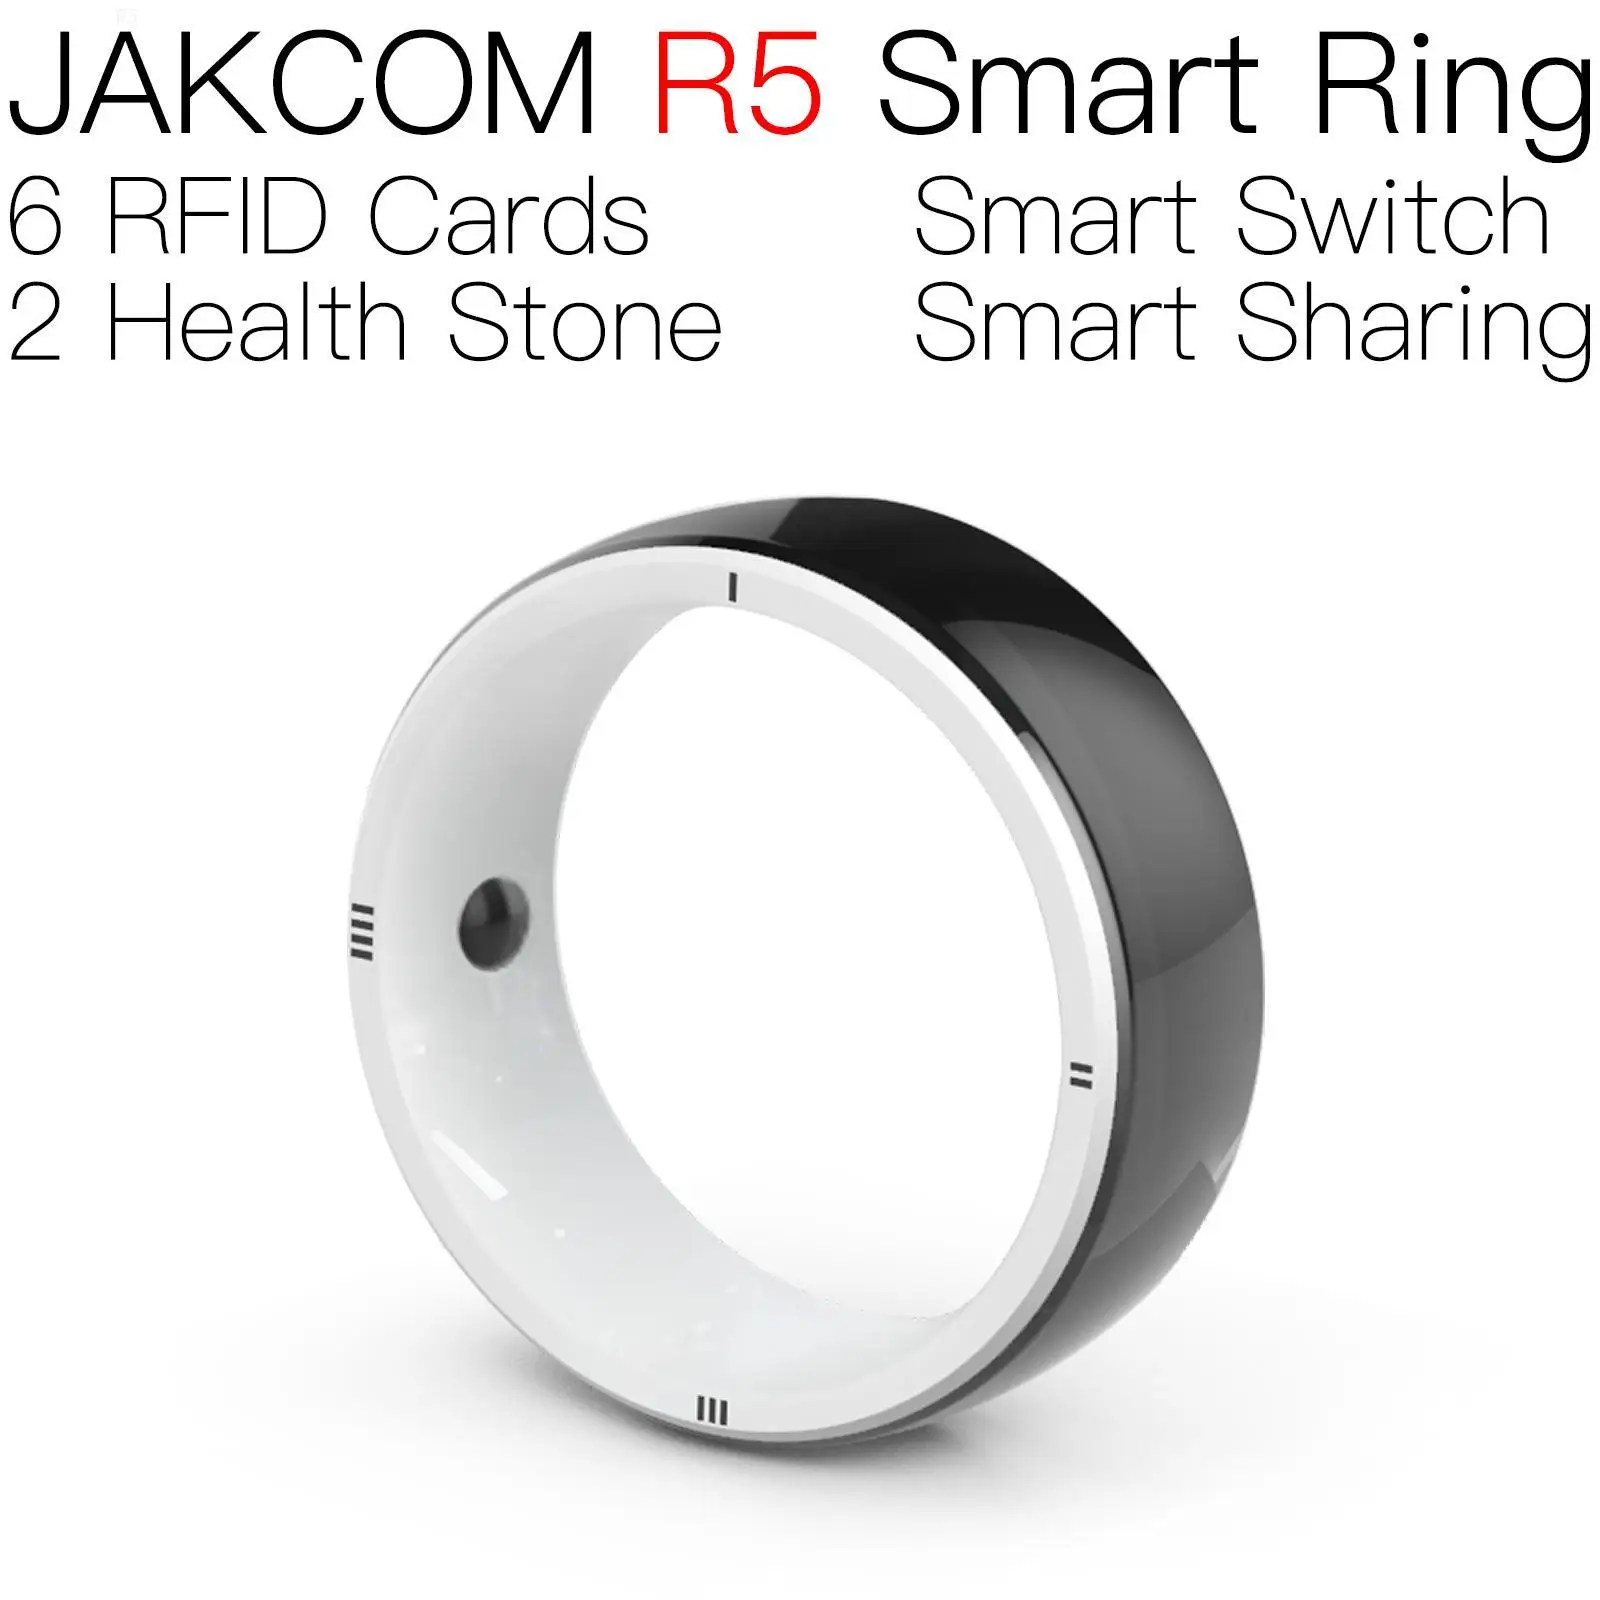 

Смарт-кольцо JAKCOM R5 для мужчин и женщин, uhf, rfid-переключатель, блестящая карта программного обеспечения world emv 125 кГц, близость, ярлык в подарок